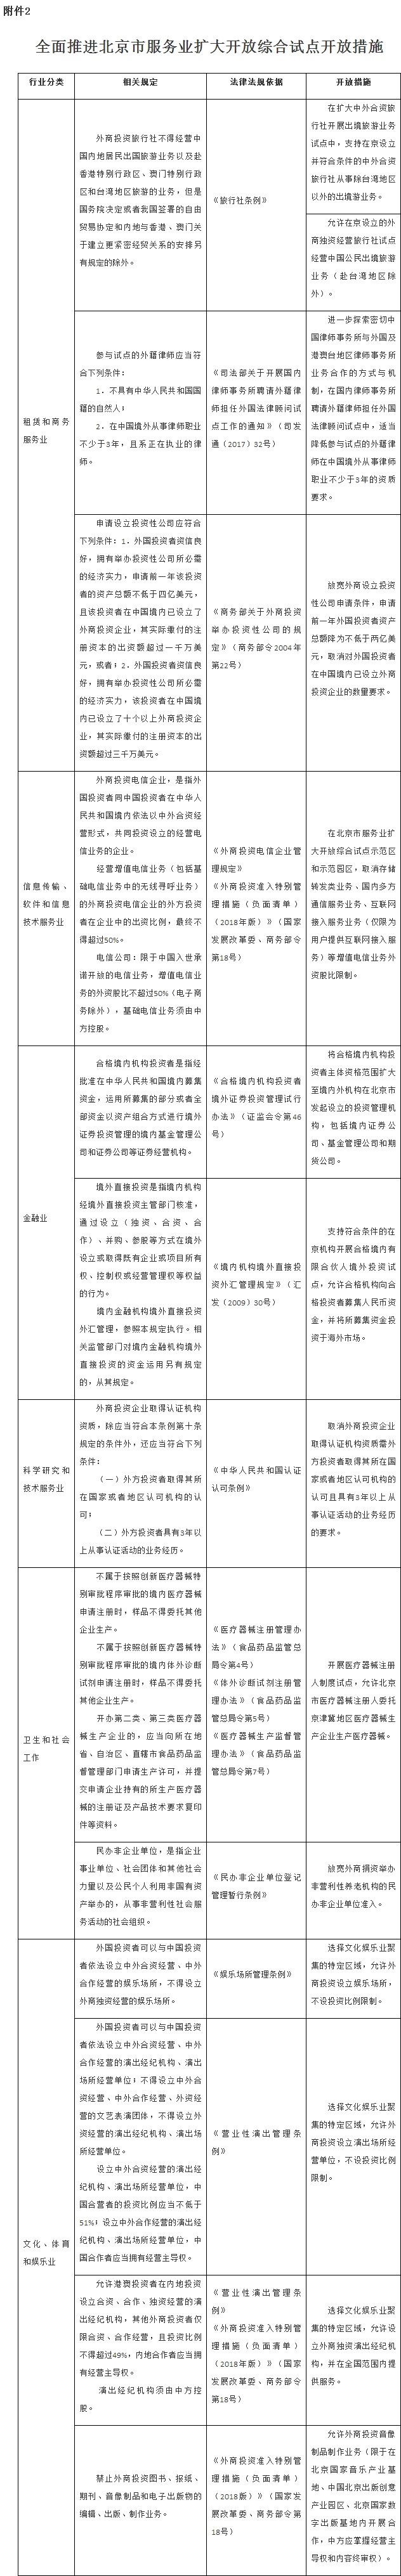 附件2：全面推进北京市服务业扩大开放综合试点开放措施